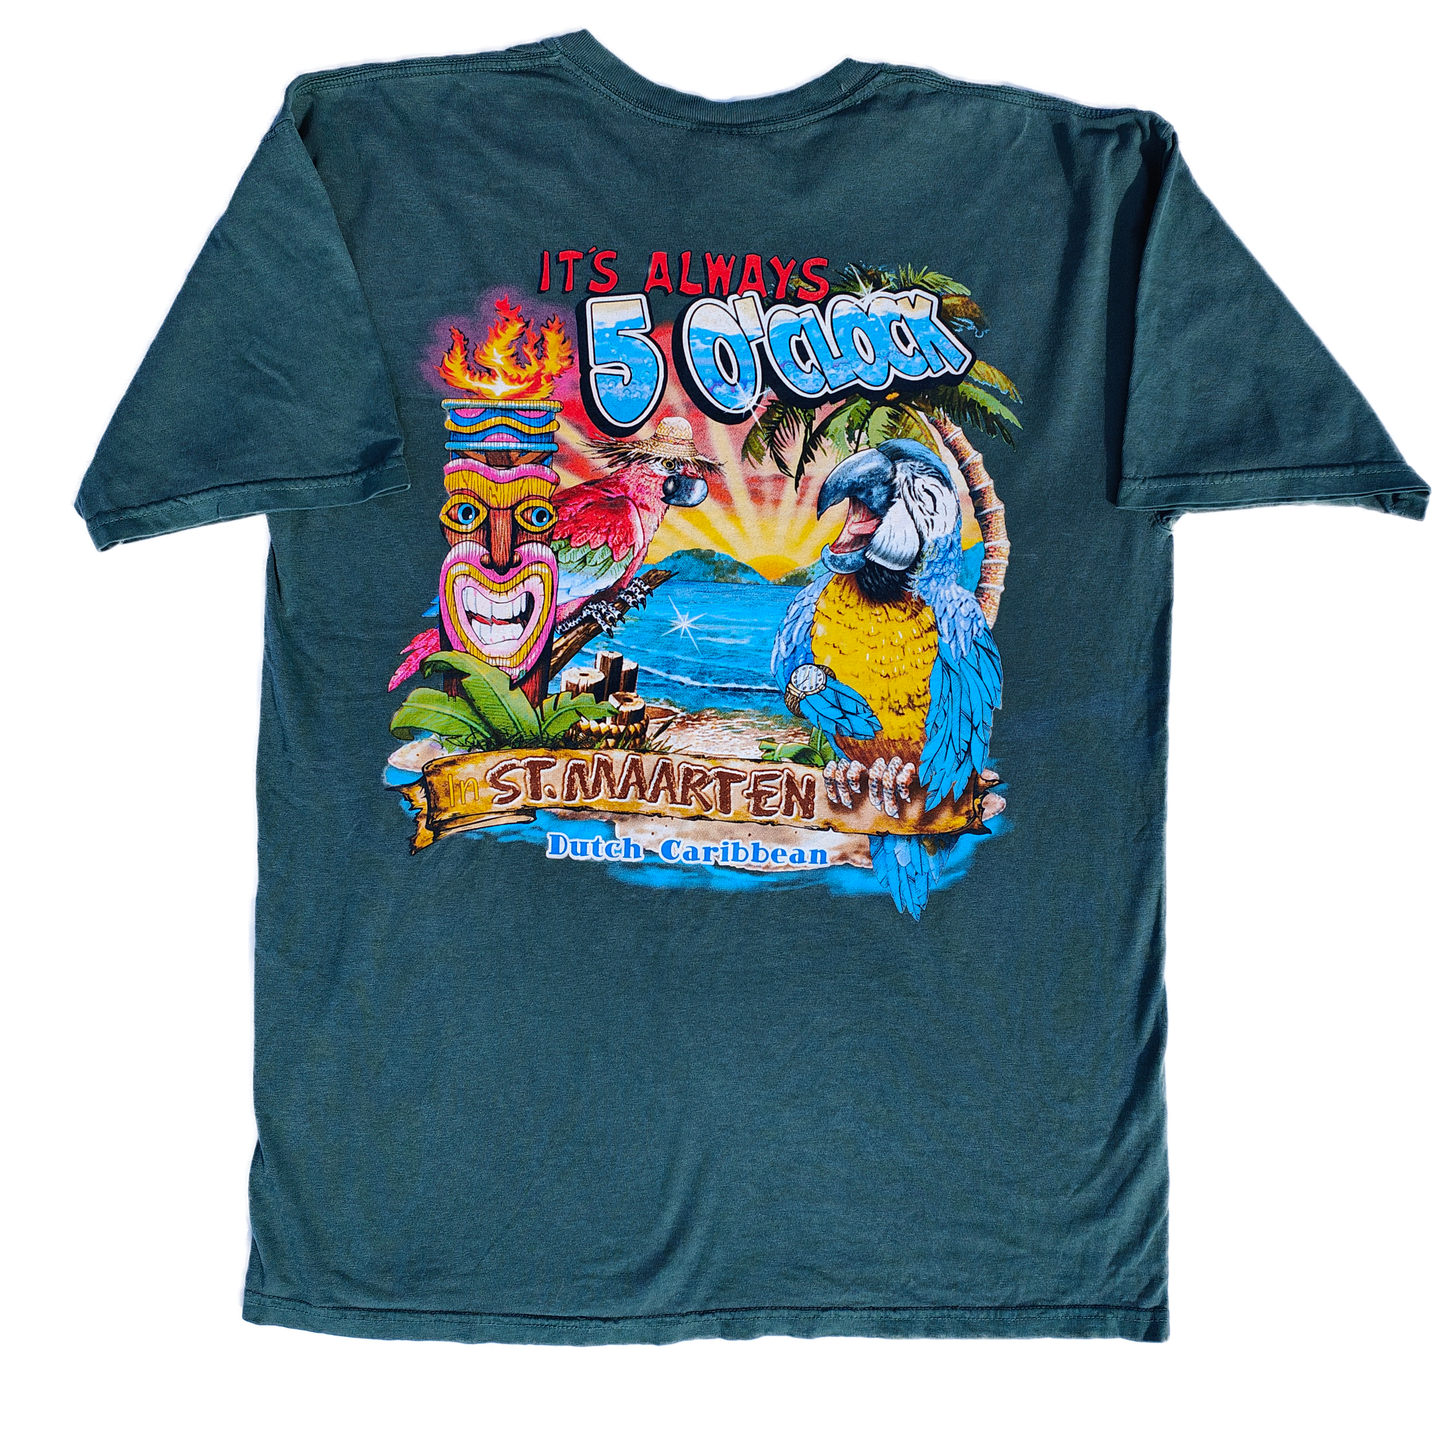 Vintage Dutch Caribbean Parrot T Shirt - LARGE